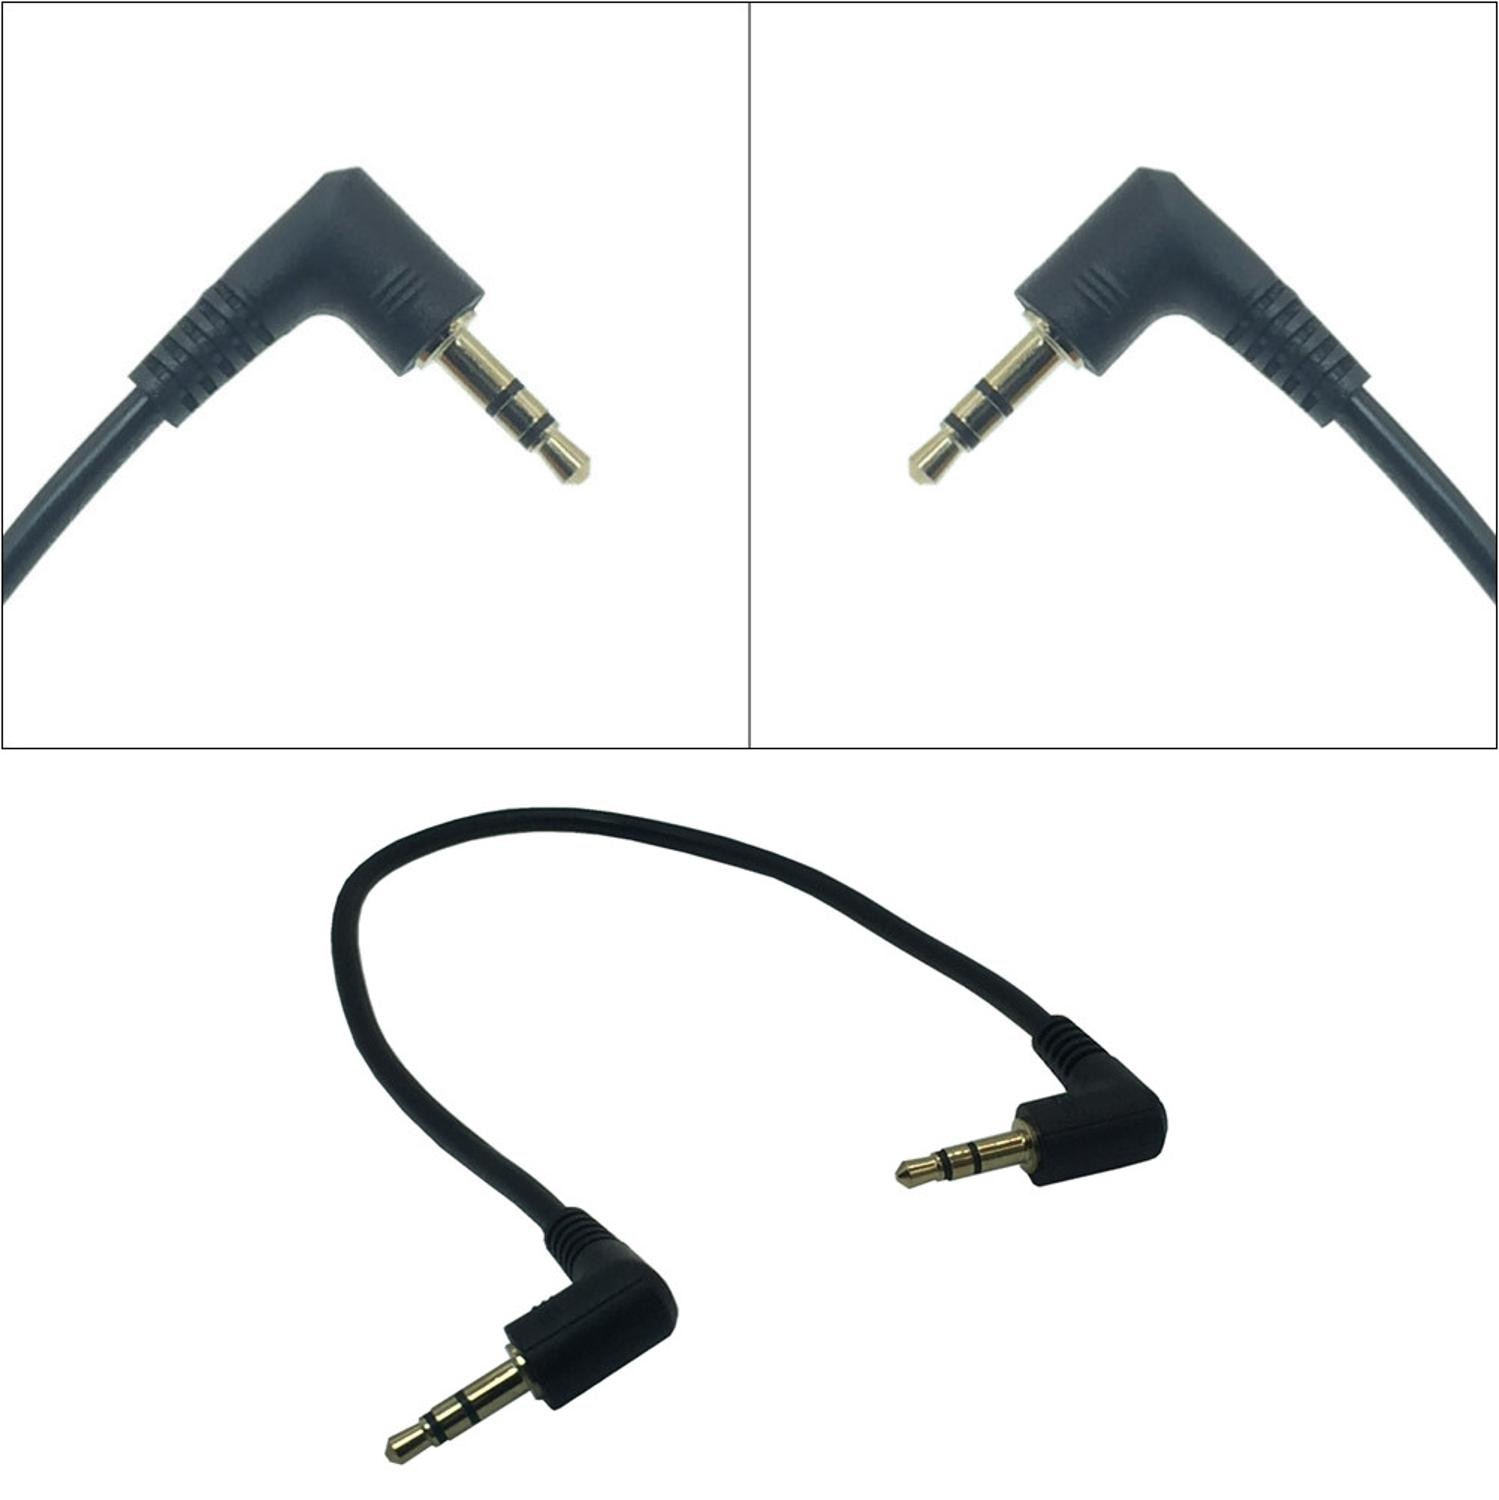 Dual Haakse AUX Kabel Jack 3.5mm Male naar Male Audio Cord 90 Graden 3 Pole